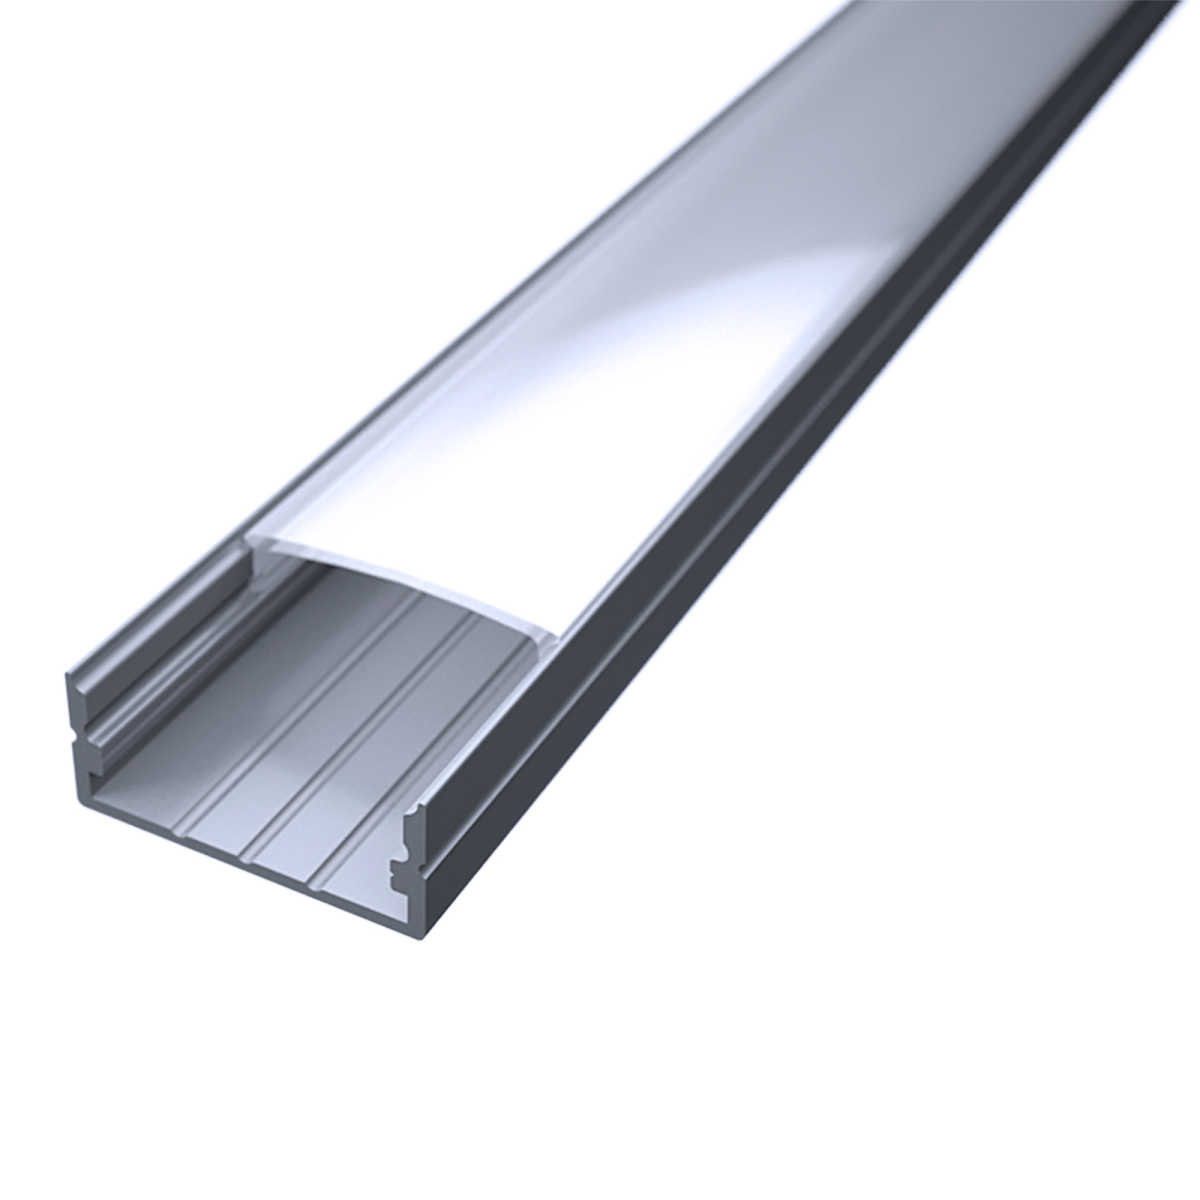 LED Flachprofil "Slim-Line max" | Abdeckung diffus | Zuschnitt auf 181cm |